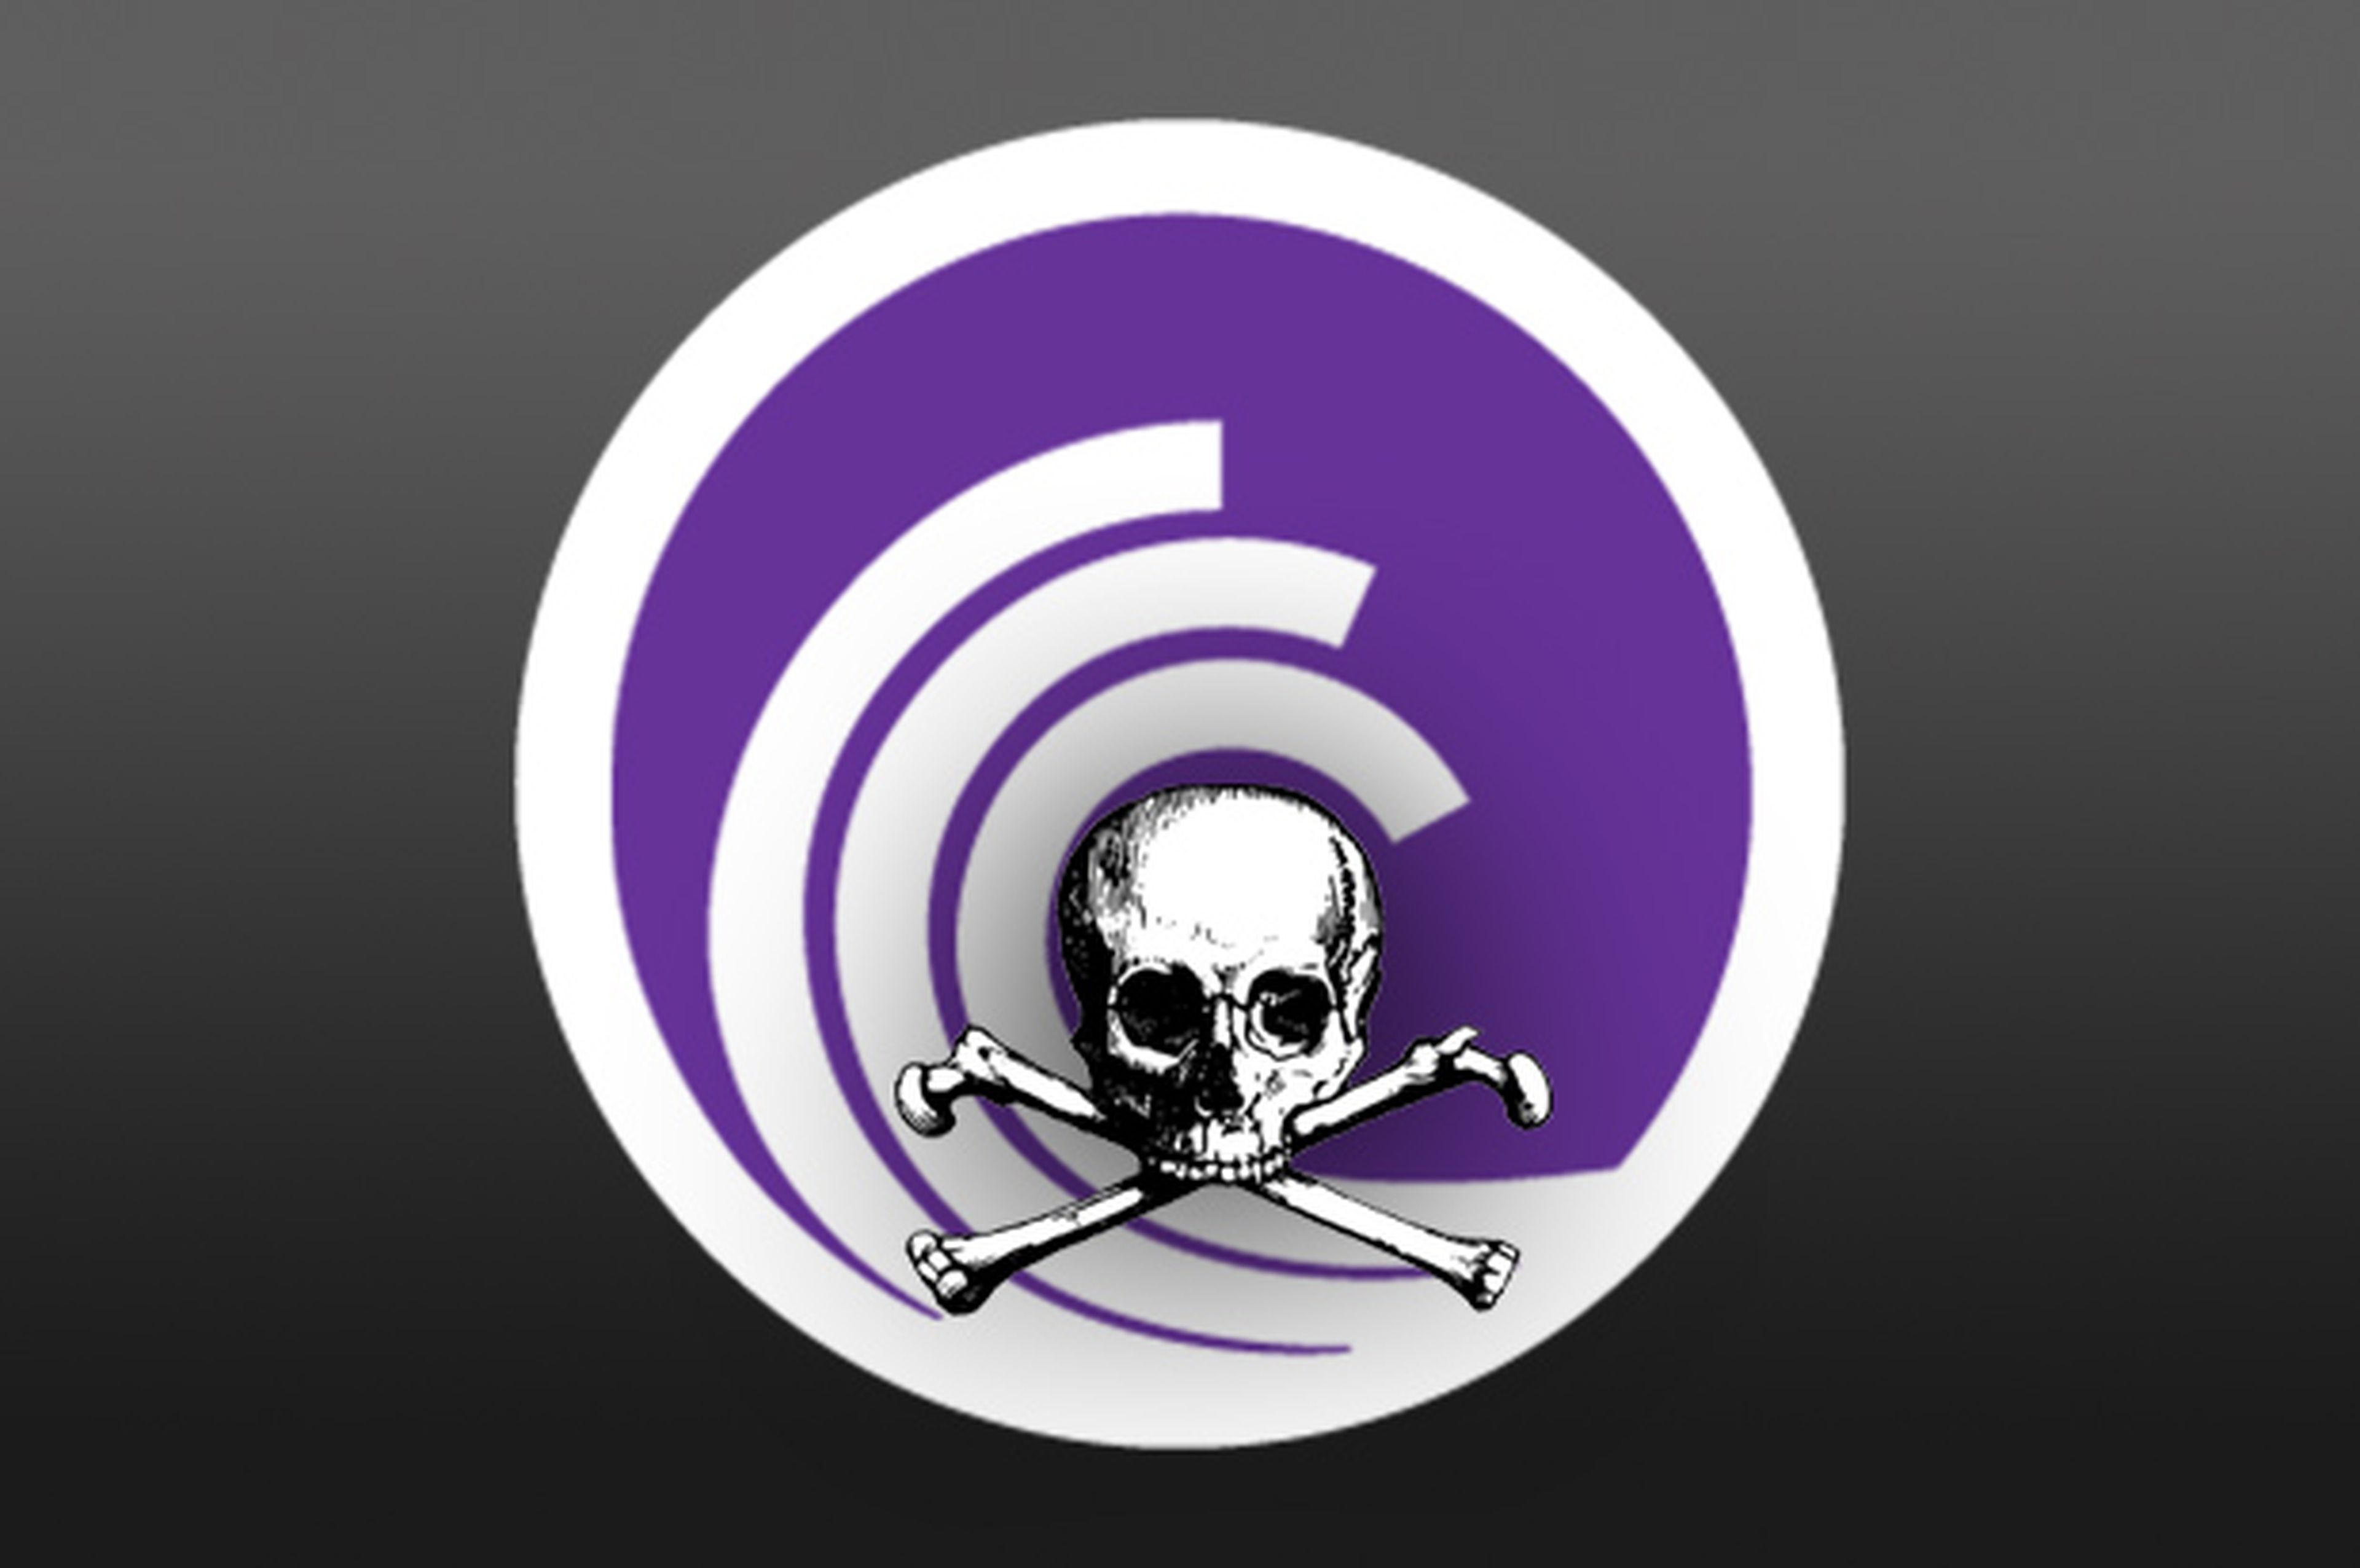 BitTorrent no es piratería, dice la compañía que lo creó